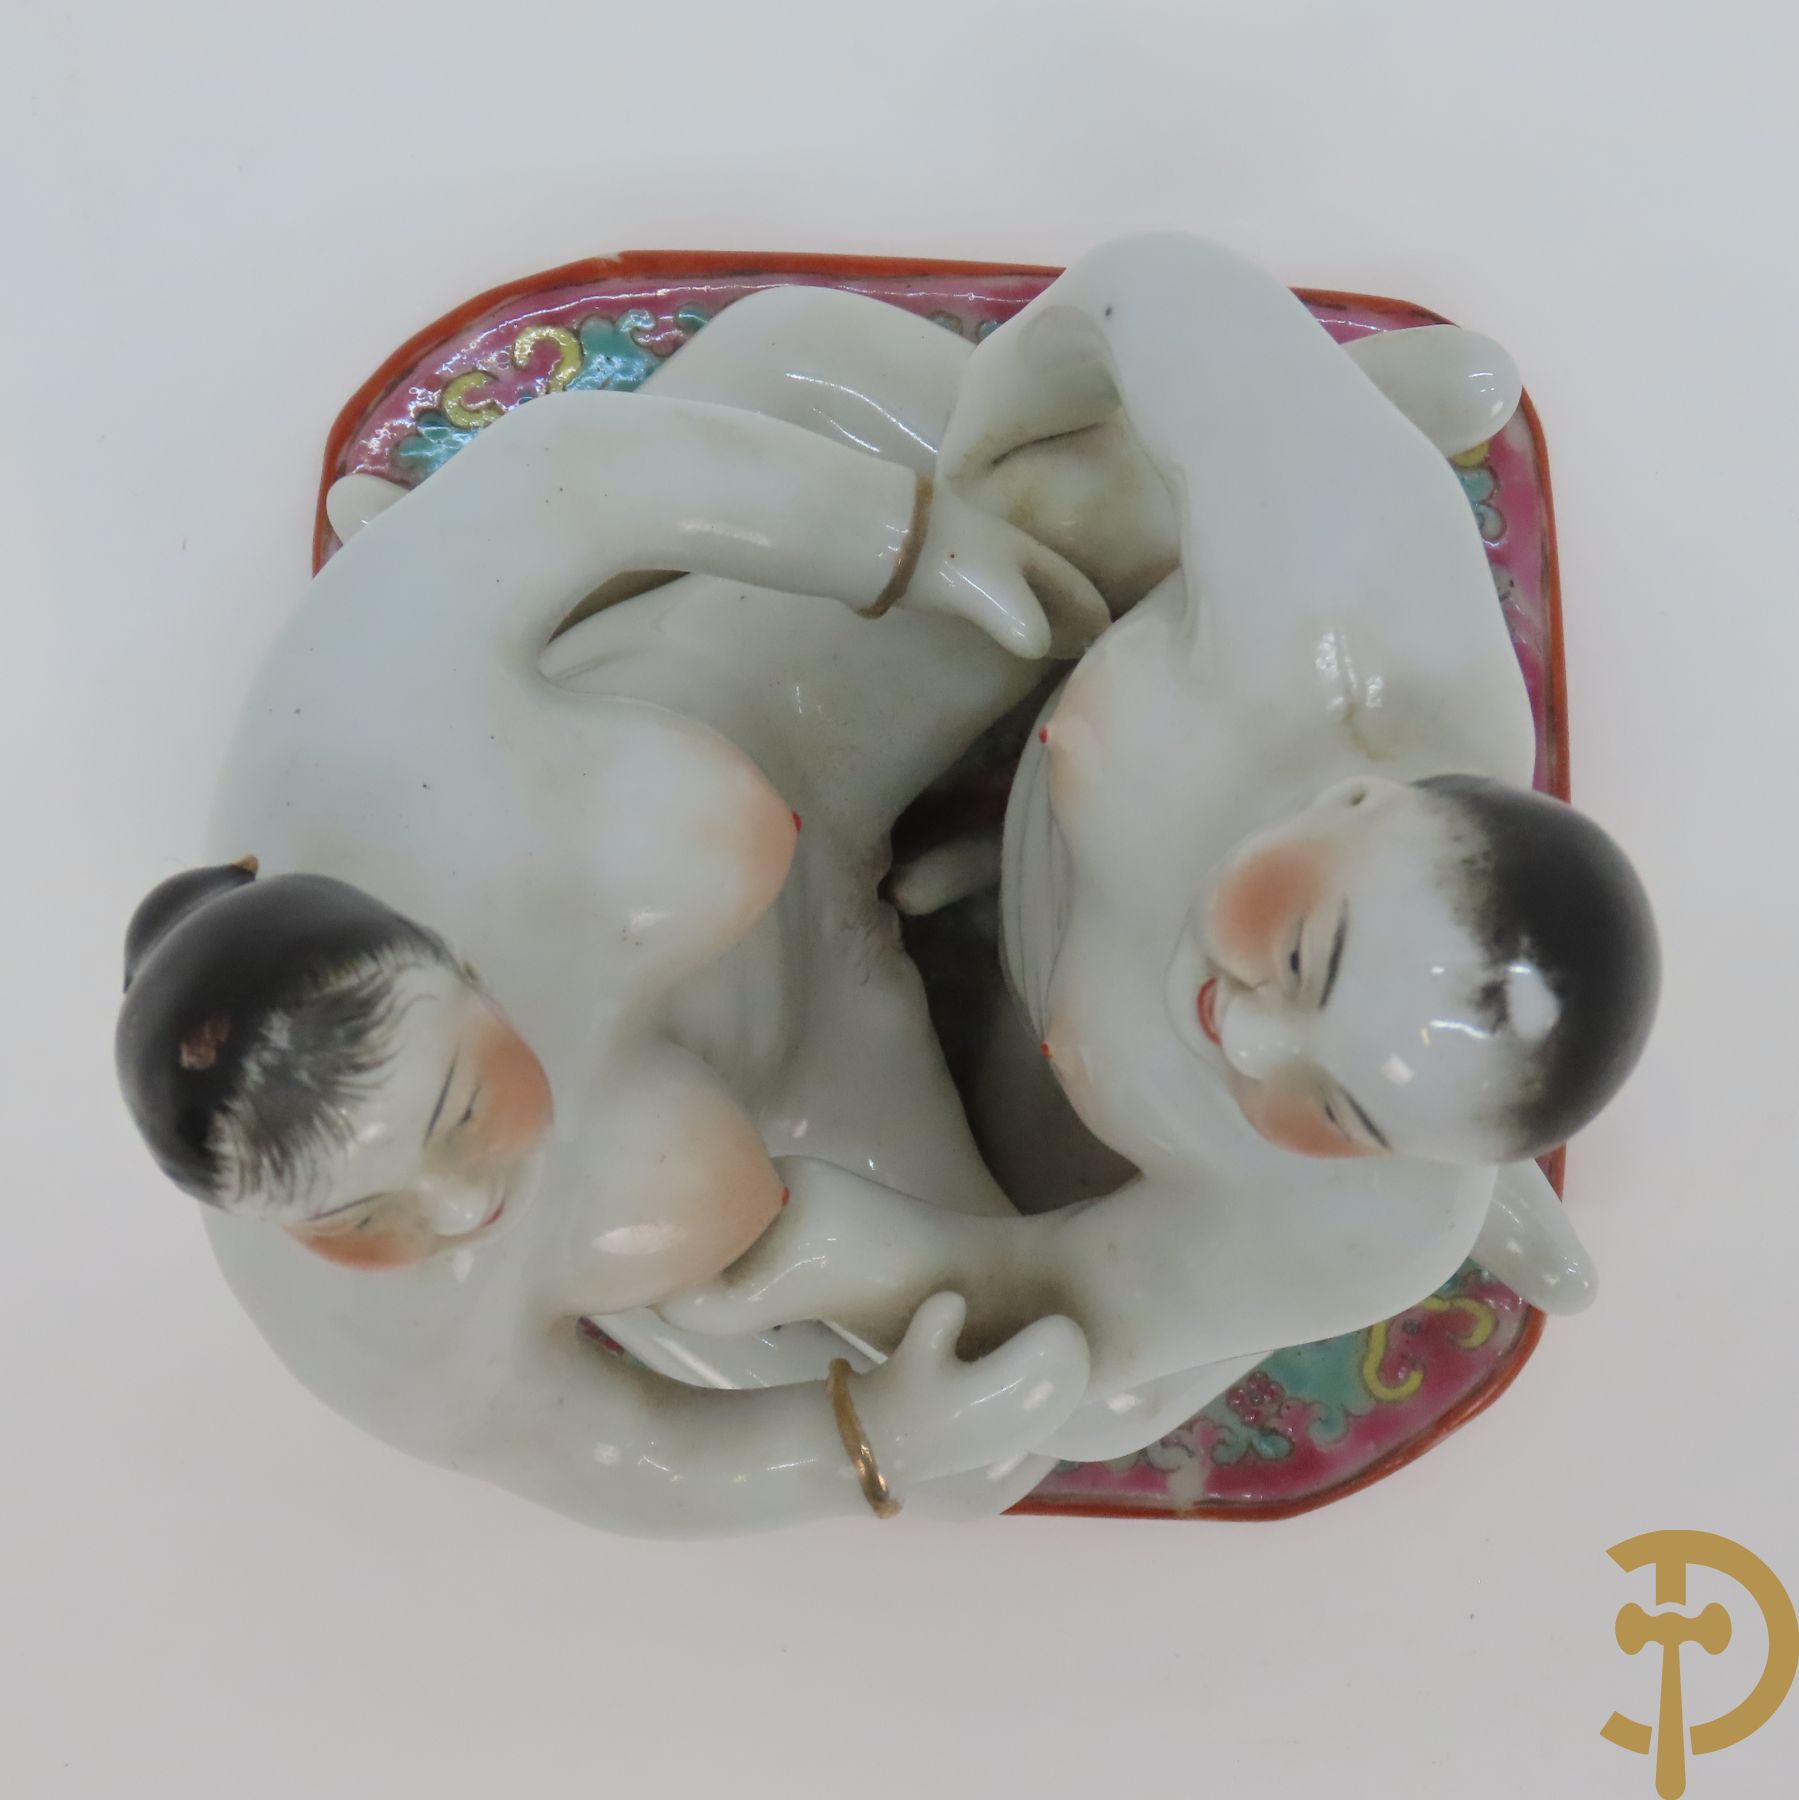 Chinese porseleinen beeld met erotische scène